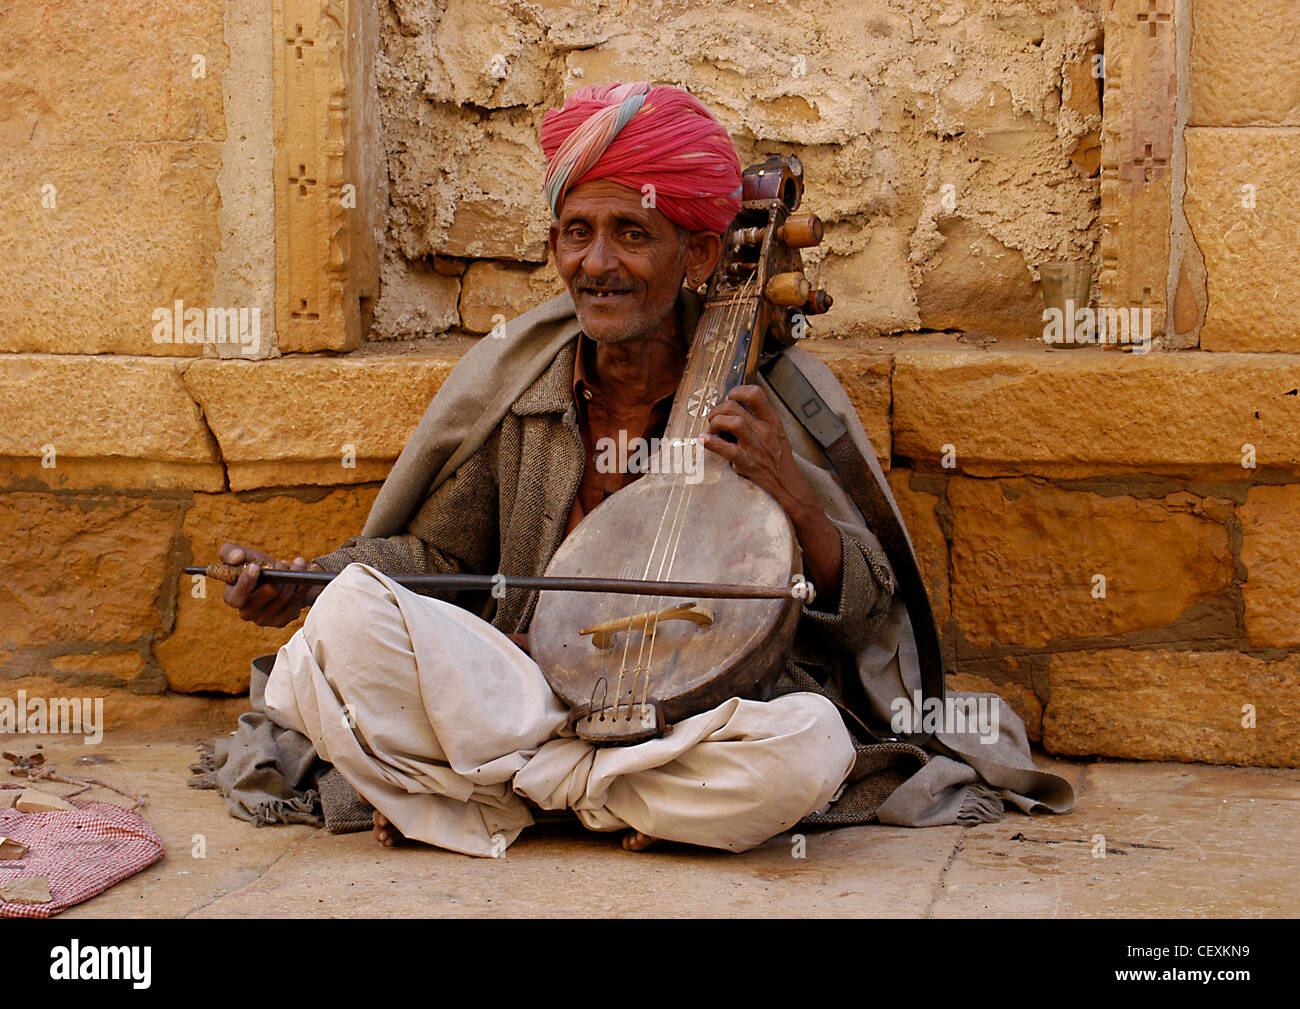 Hauts homme Rajput aux spectacles de musique joyeuse récitée sur violon fait main 'veena' hôtesse public dans la rue pour les dons. Banque D'Images